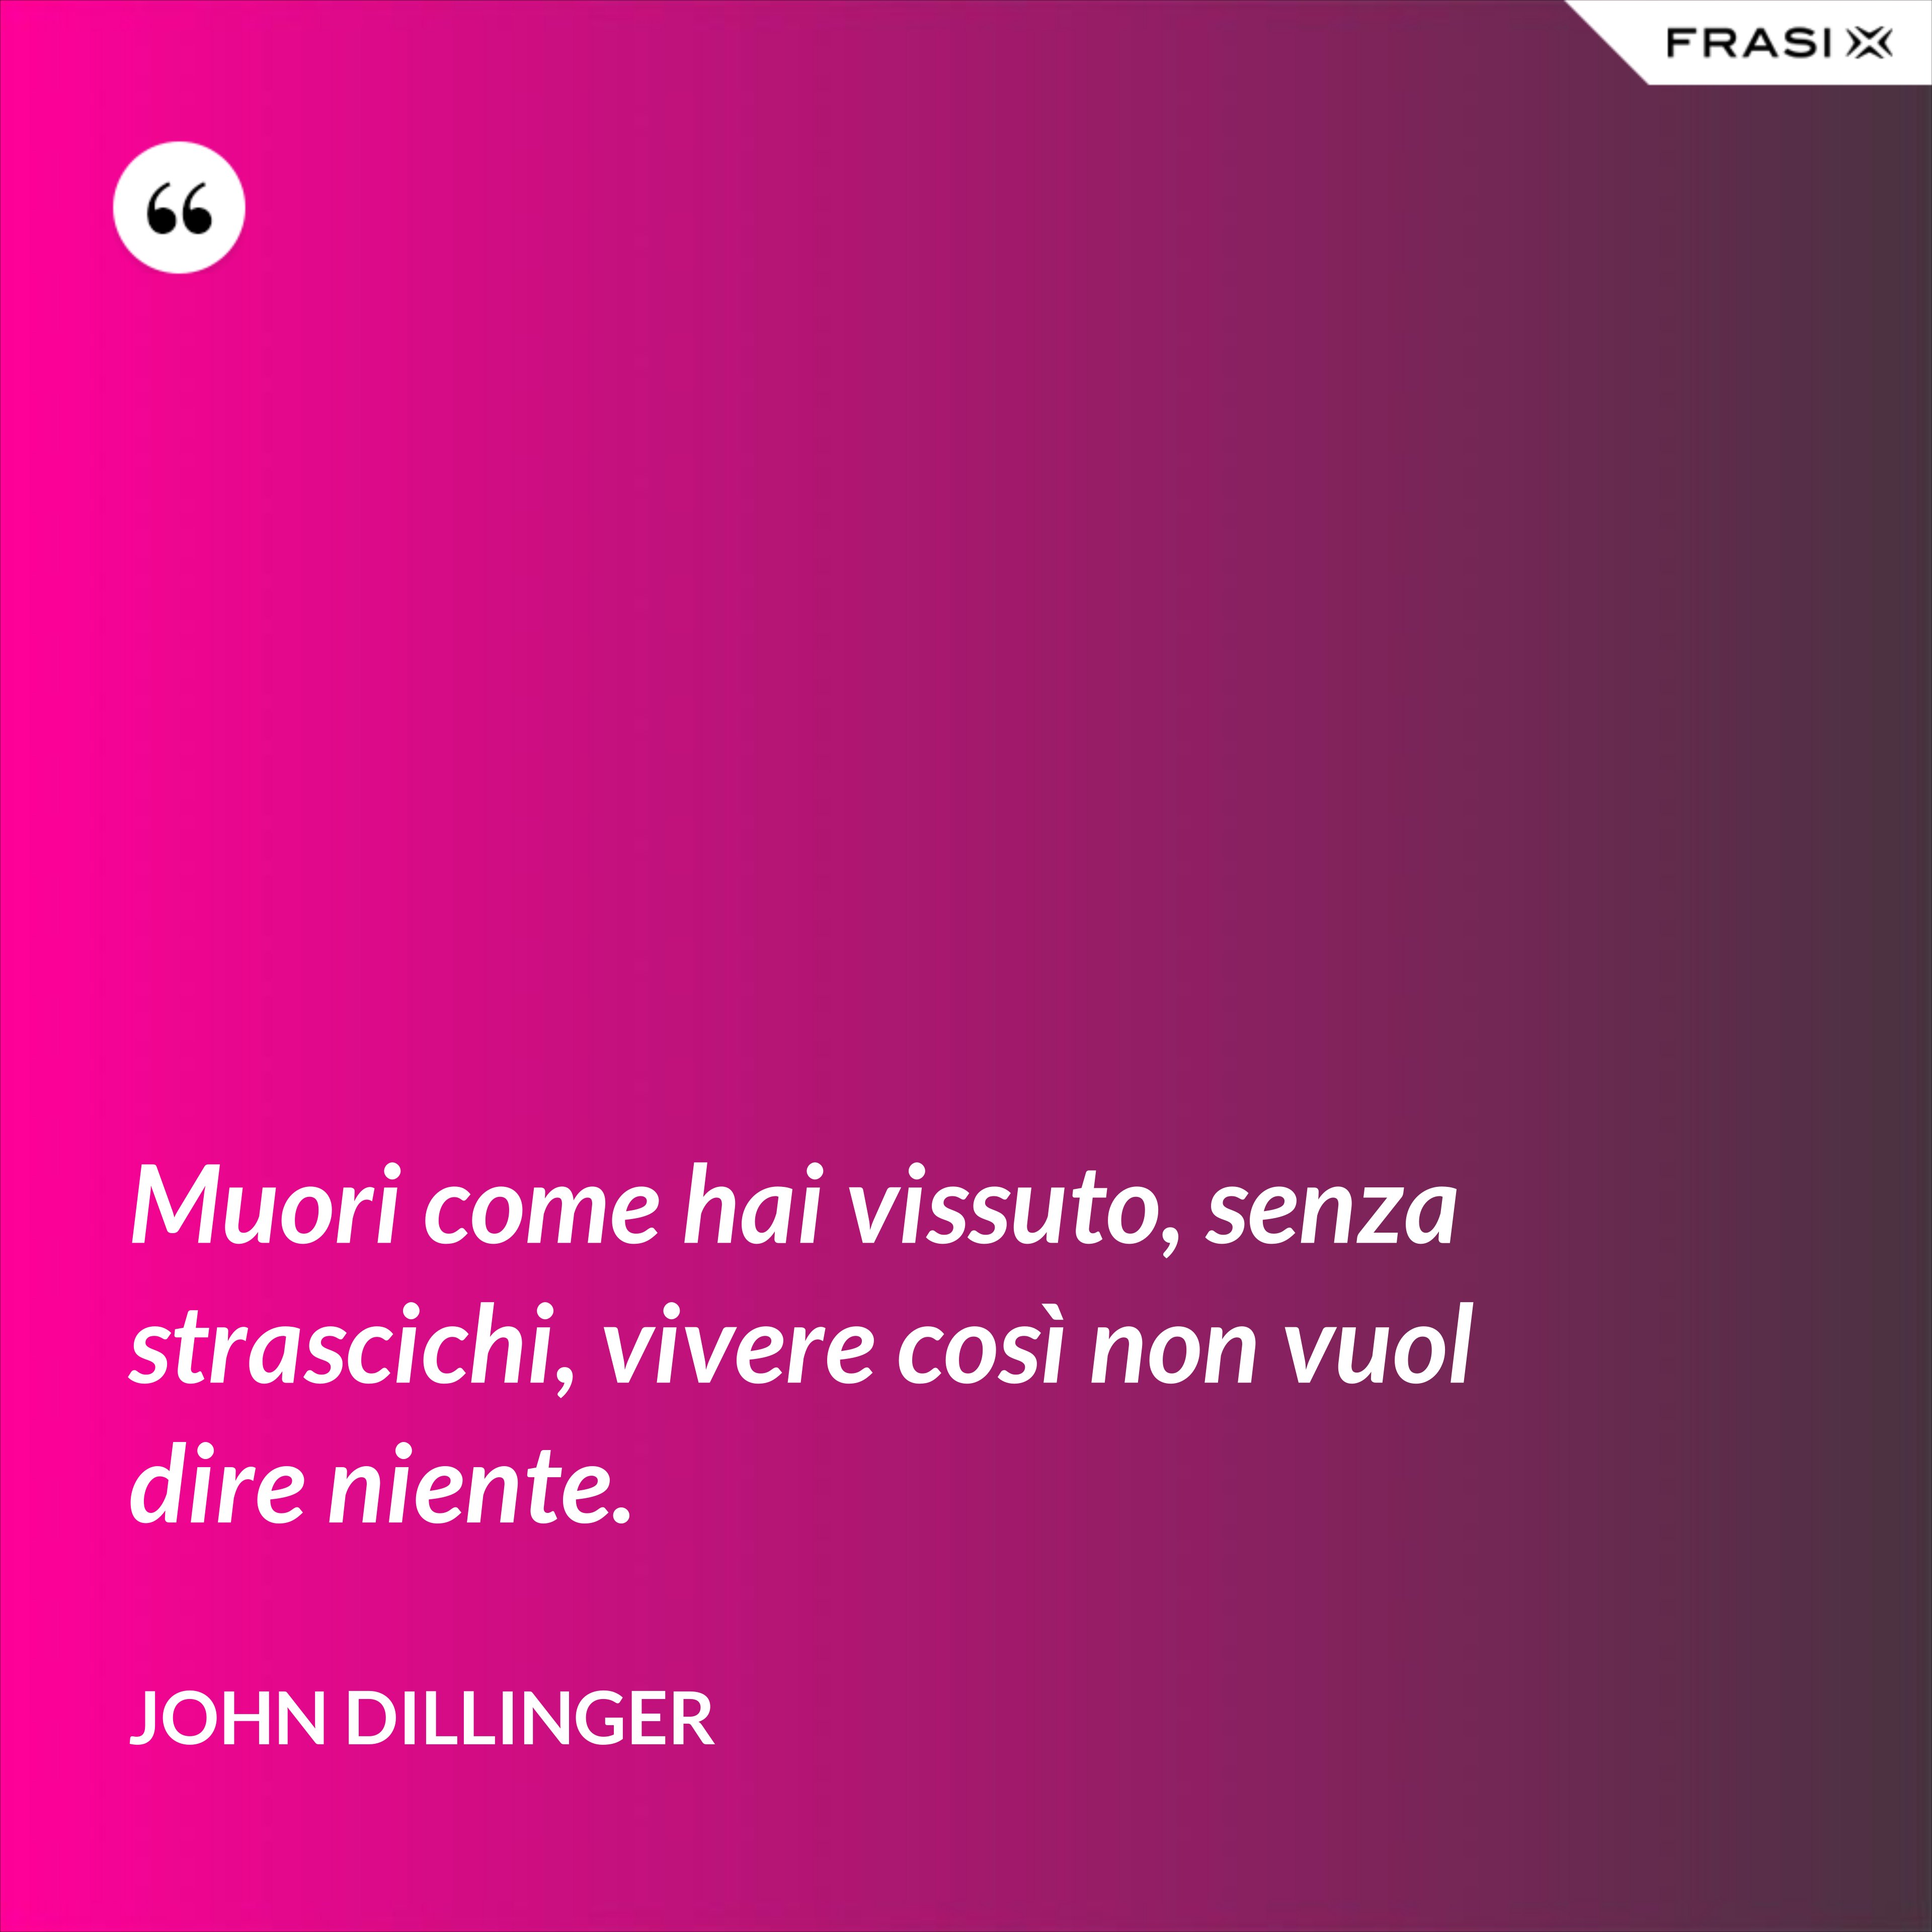 Muori come hai vissuto, senza strascichi, vivere così non vuol dire niente. - John Dillinger